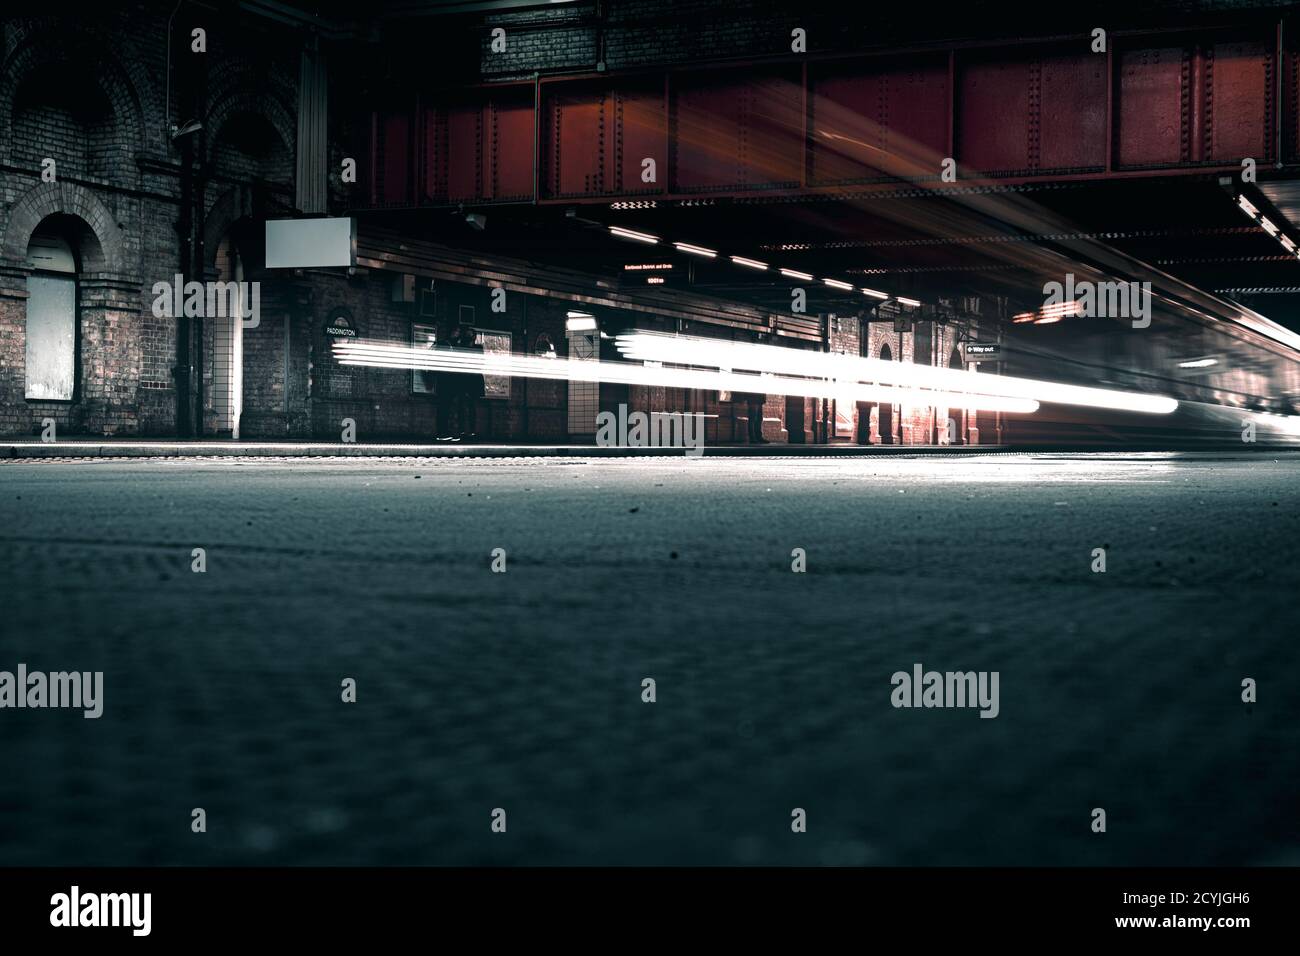 Riprese cinematografiche a lunga esposizione della rete ferroviaria sotterranea in Londra in una stazione all'aperto con luci luminose Foto Stock